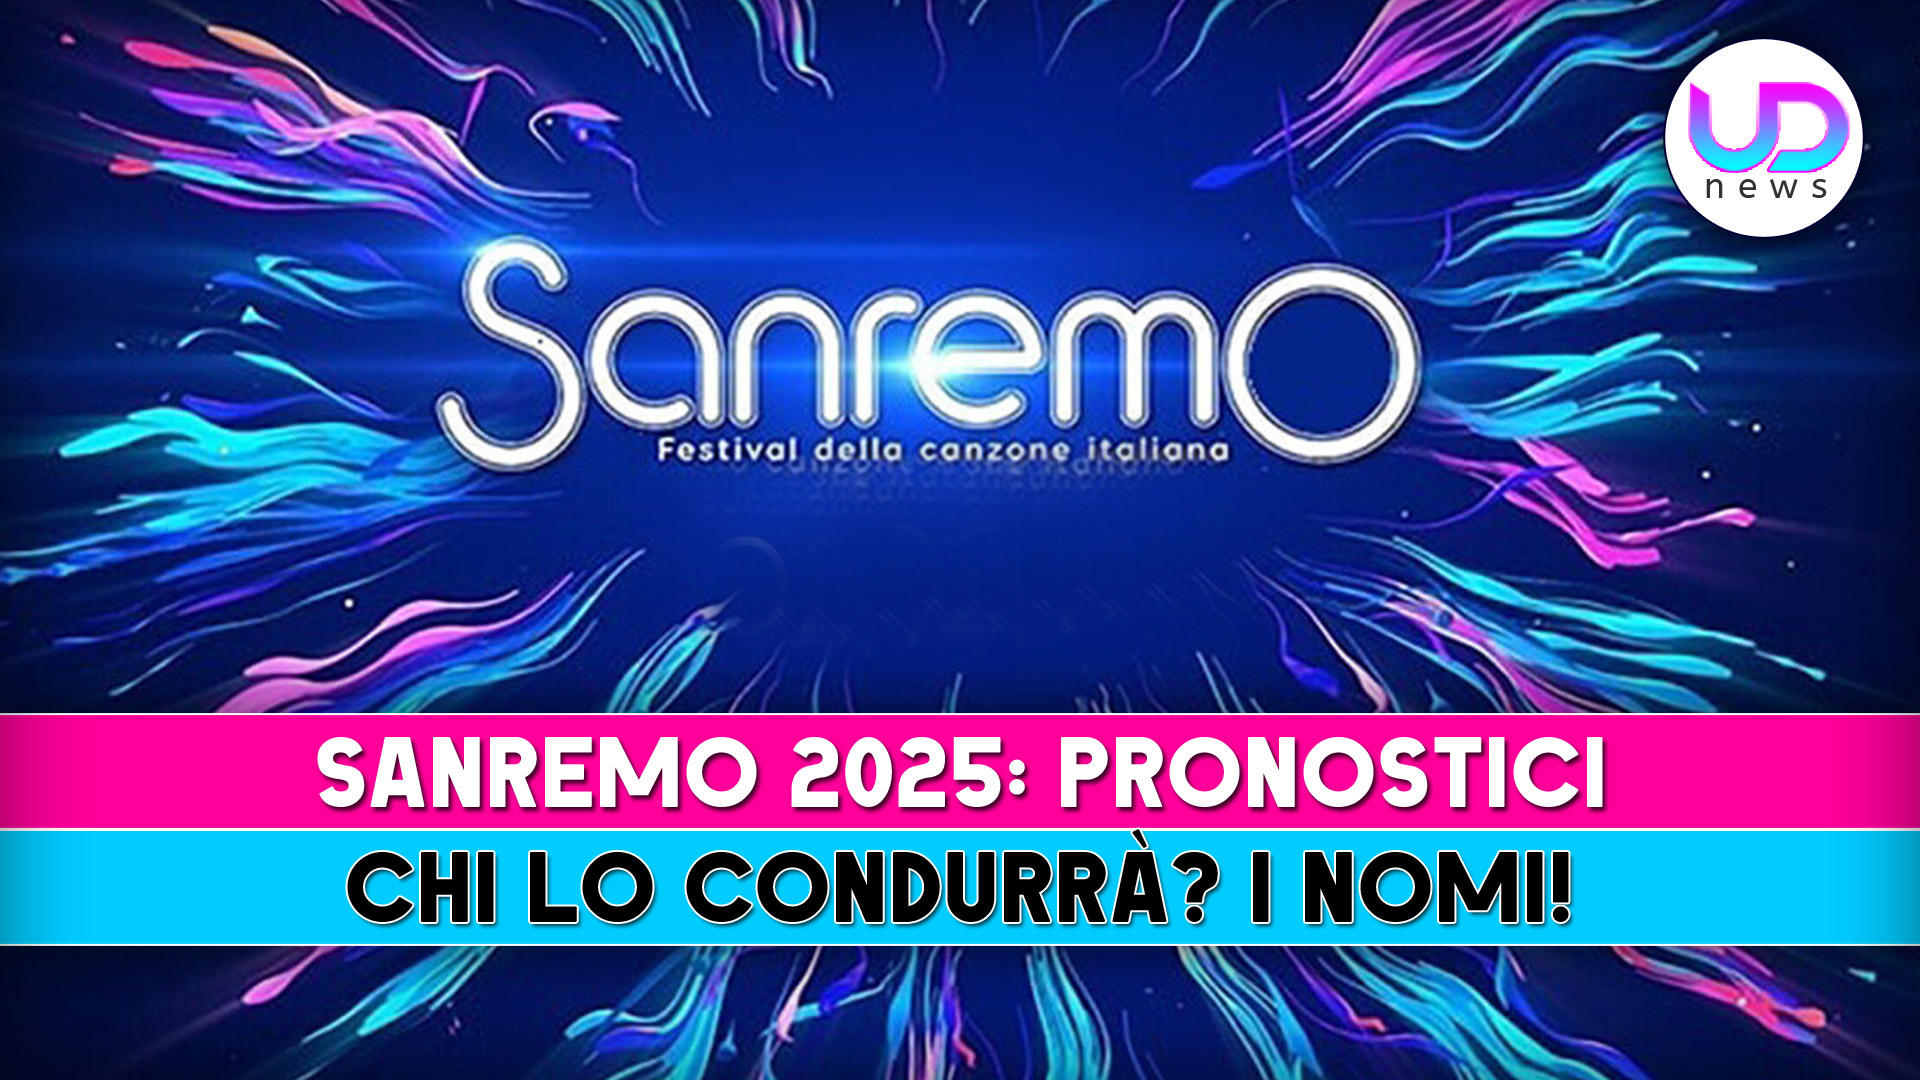 Sanremo 2025 